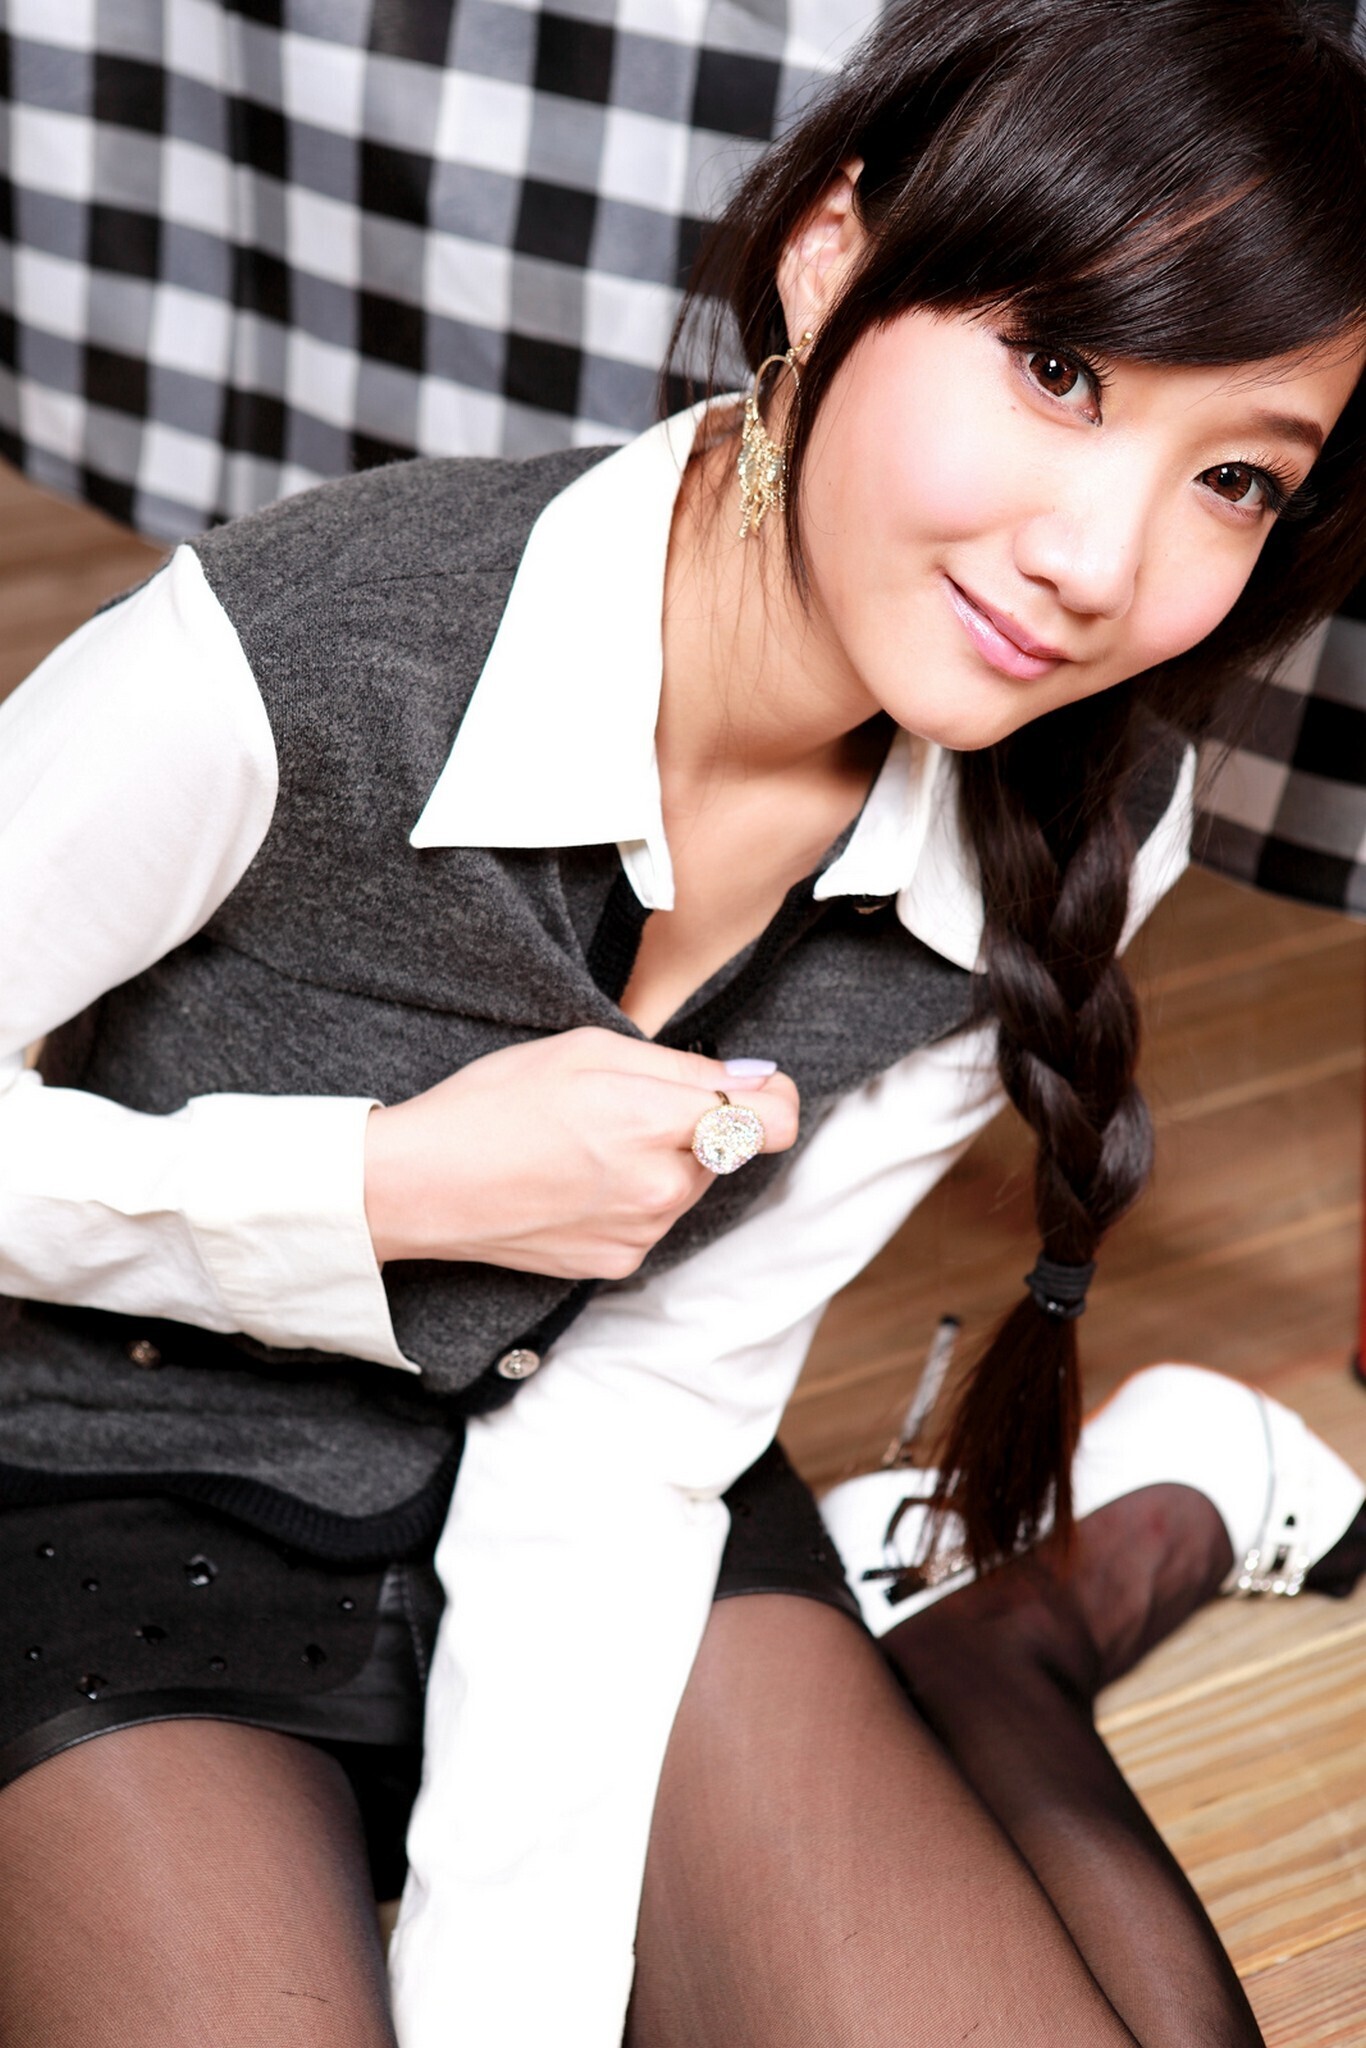 Tina 0120129 Yiqing domestic model high definition photo of beautiful women